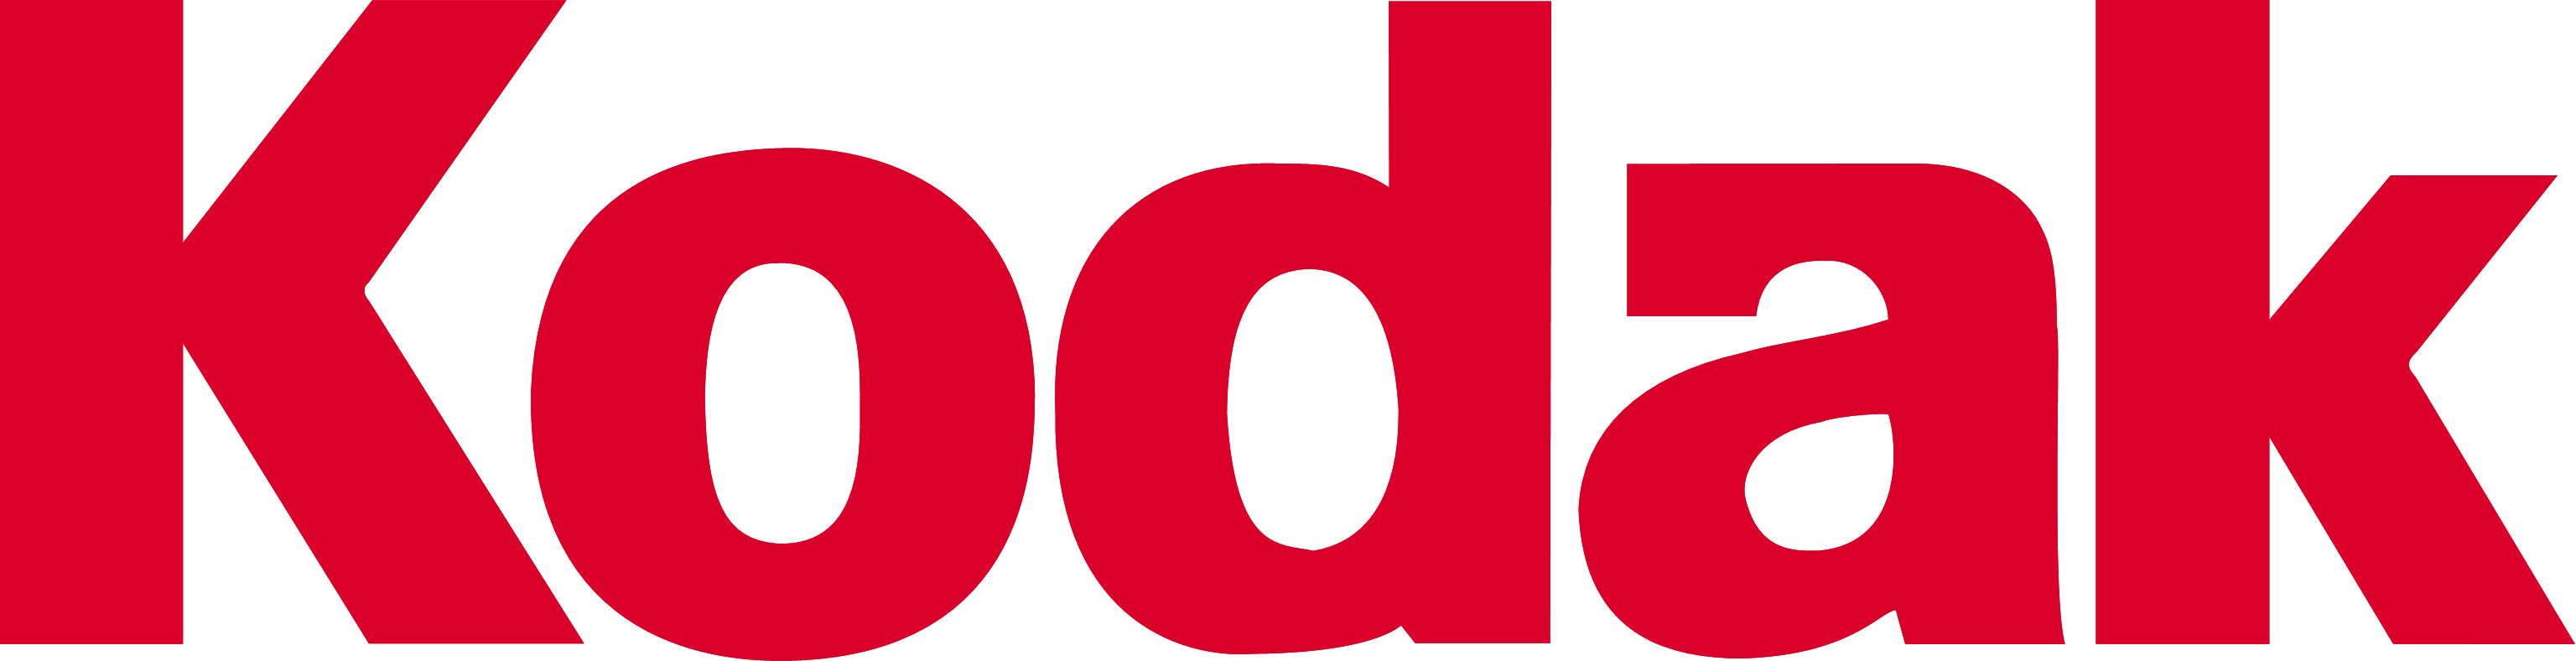 Image - Kodak 1996.png - Logopedia, the logo and branding site